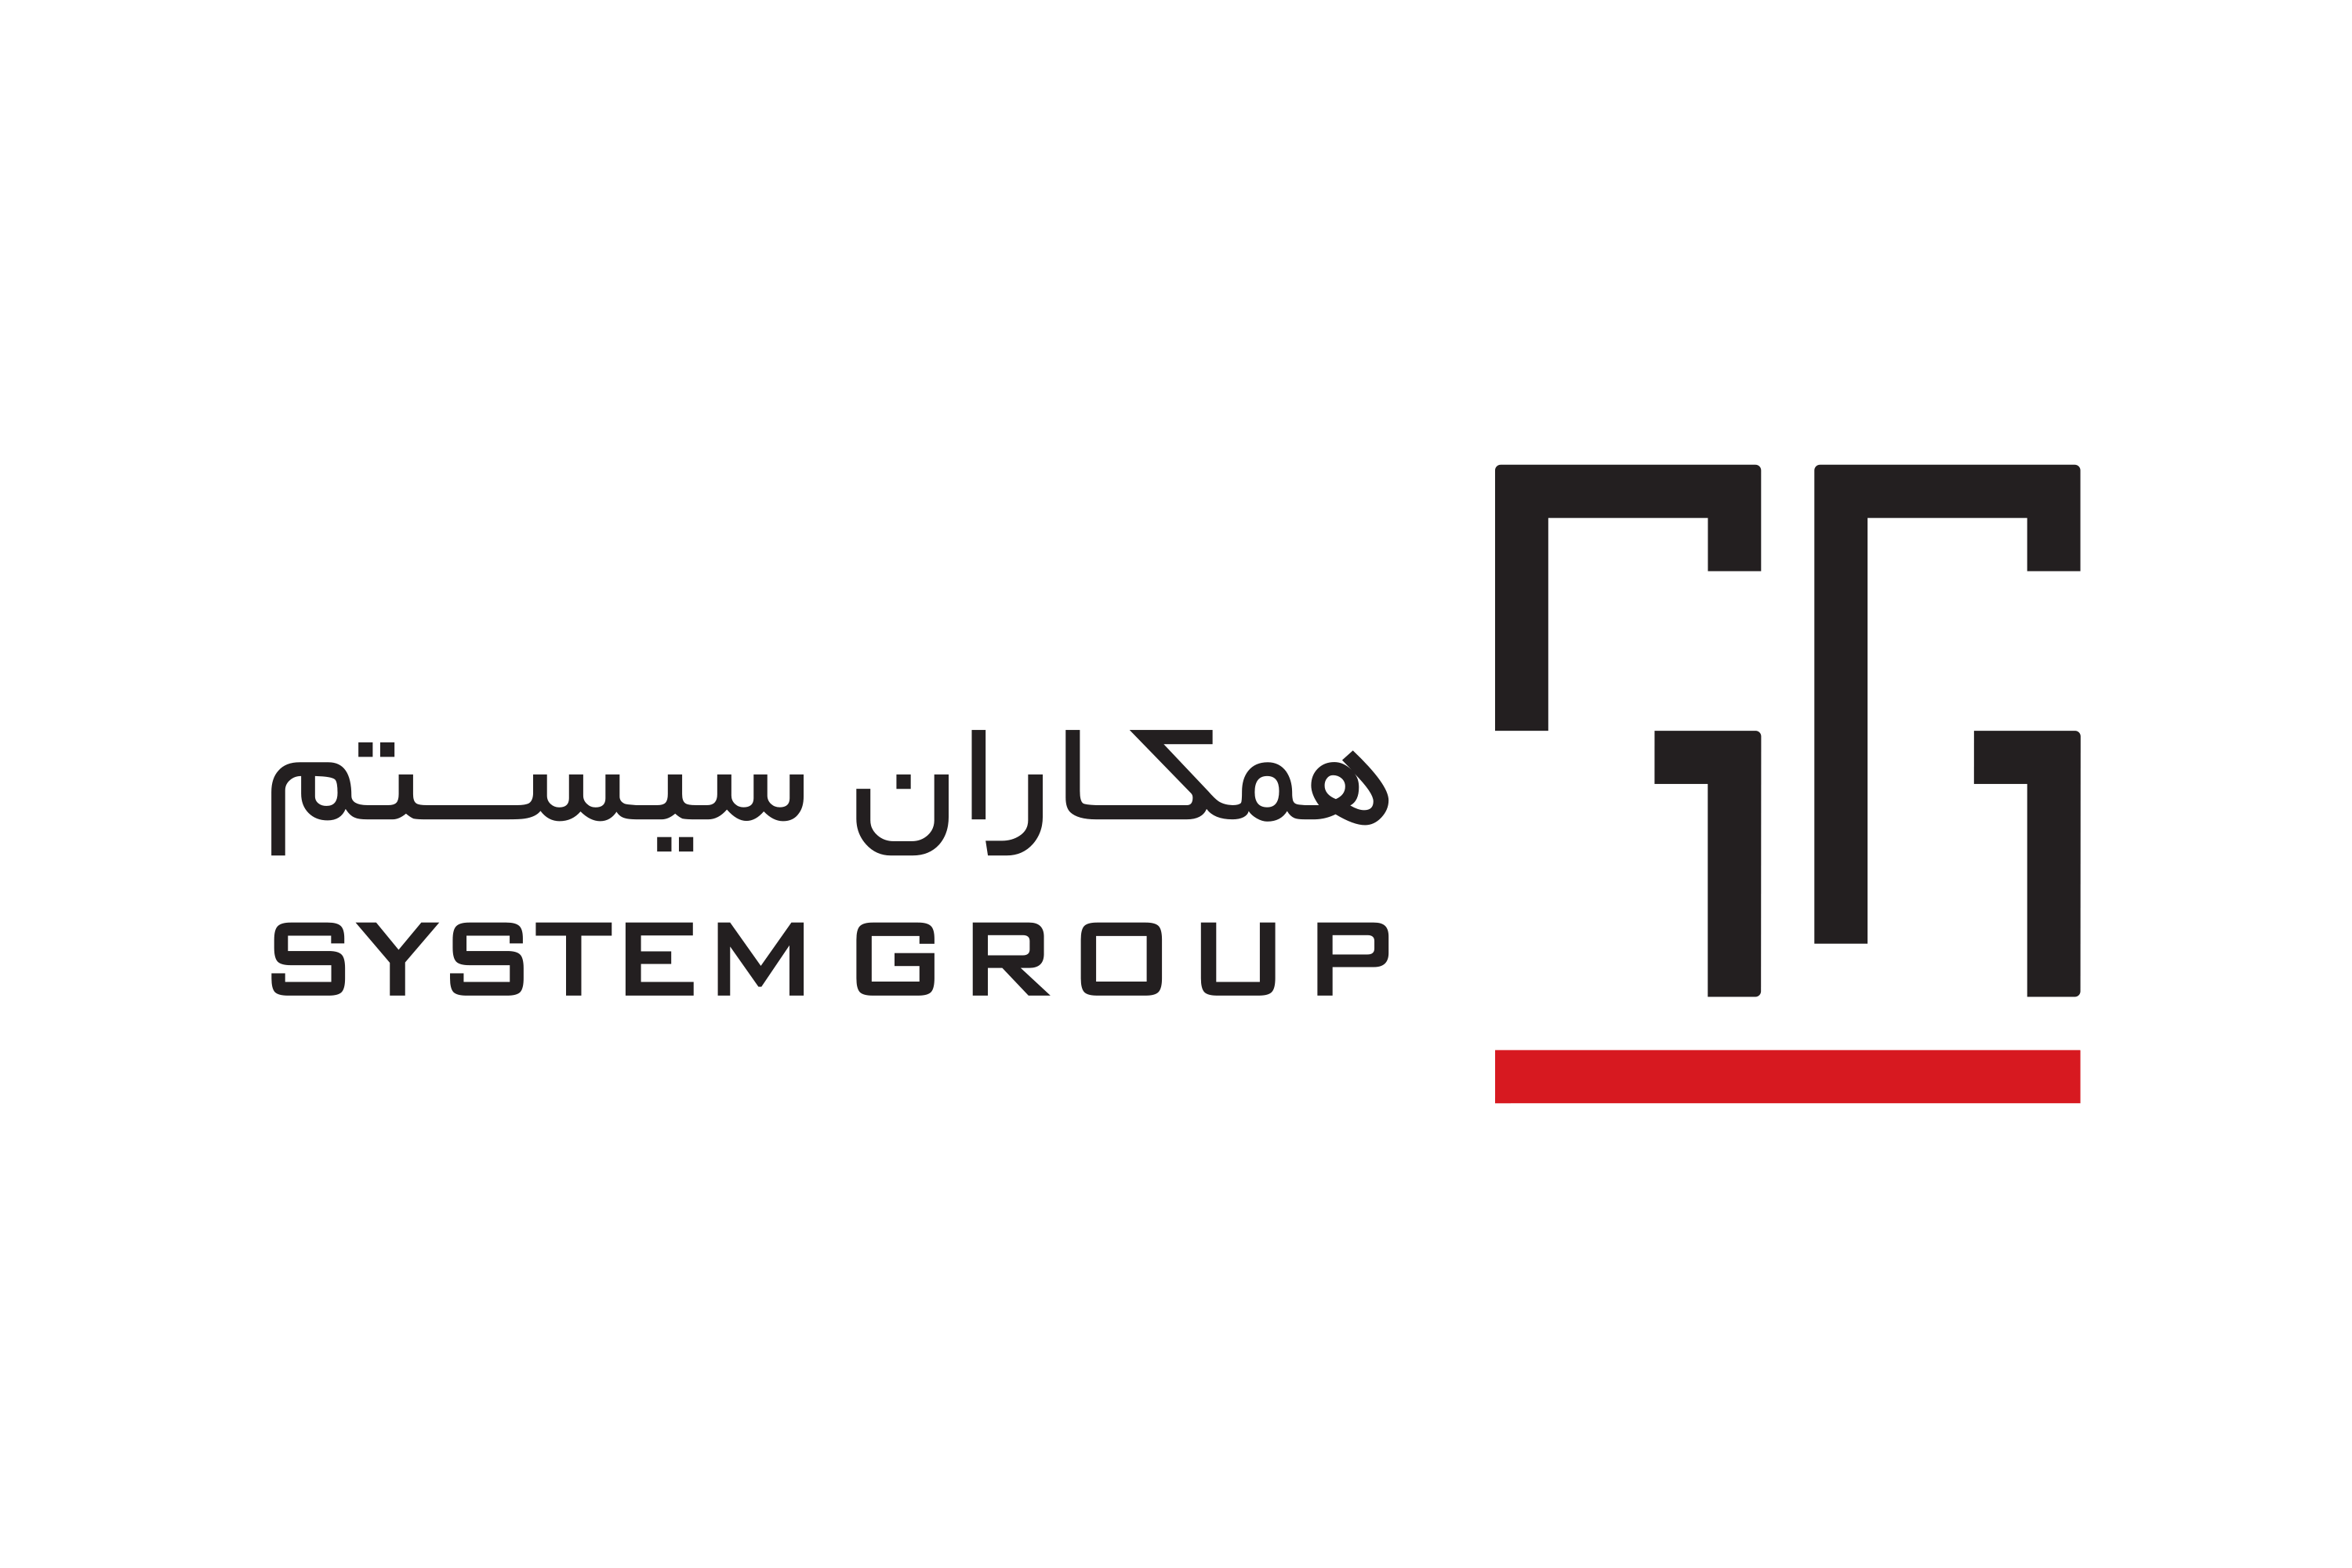 Download System Group (SG, Hamkaran System) Logo in SVG Vector or PNG ...